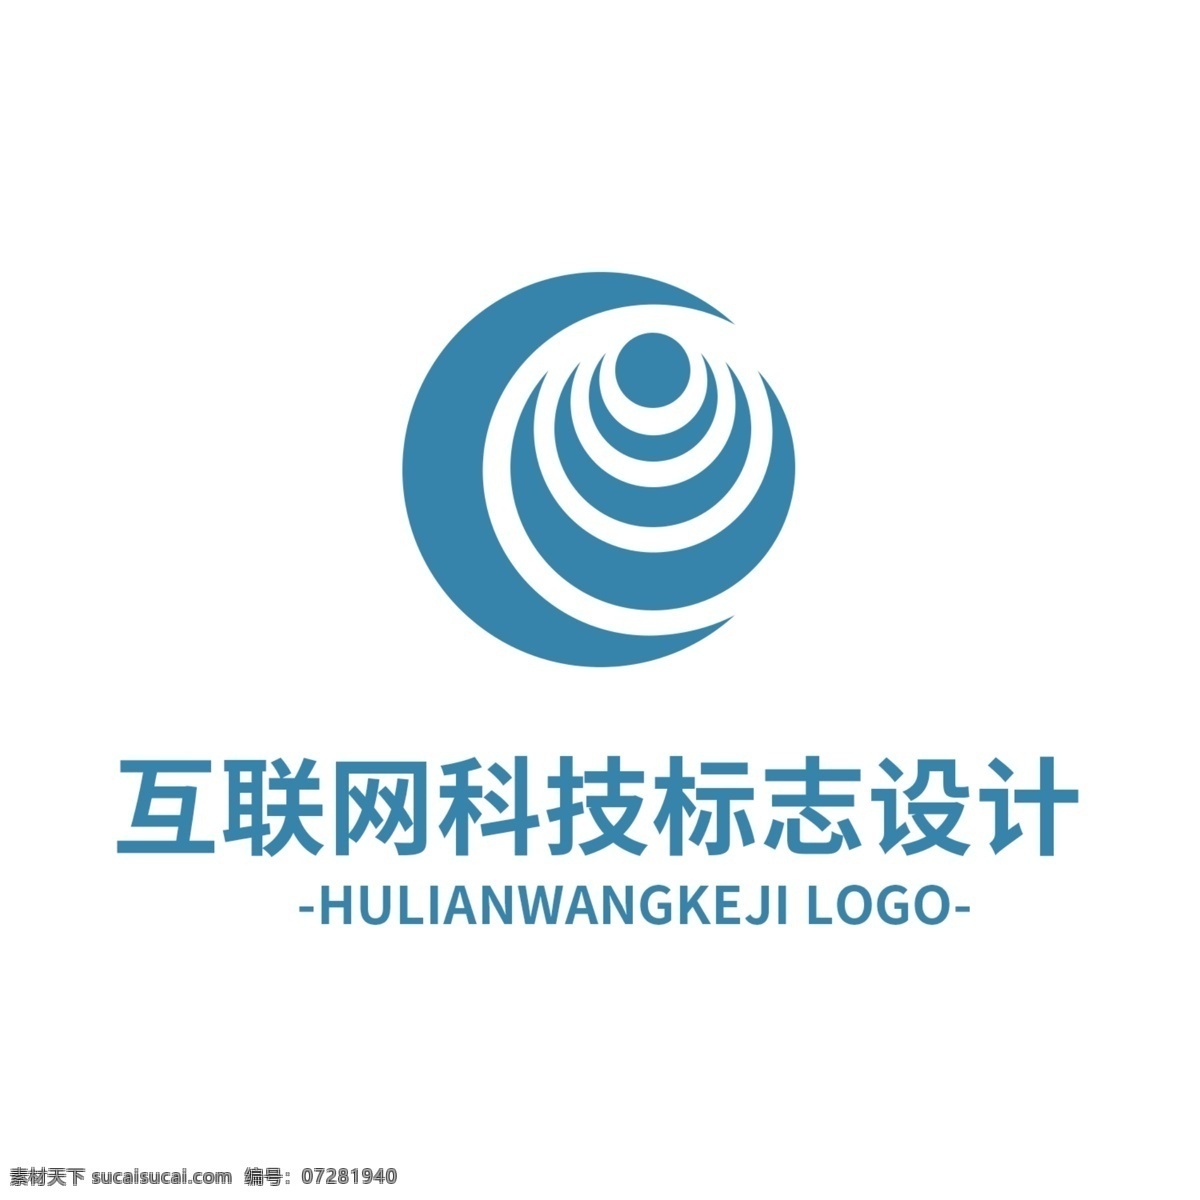 互联网 科技 标志设计 logo 标志 行业标识 it 网络 蓝色 简约 现代